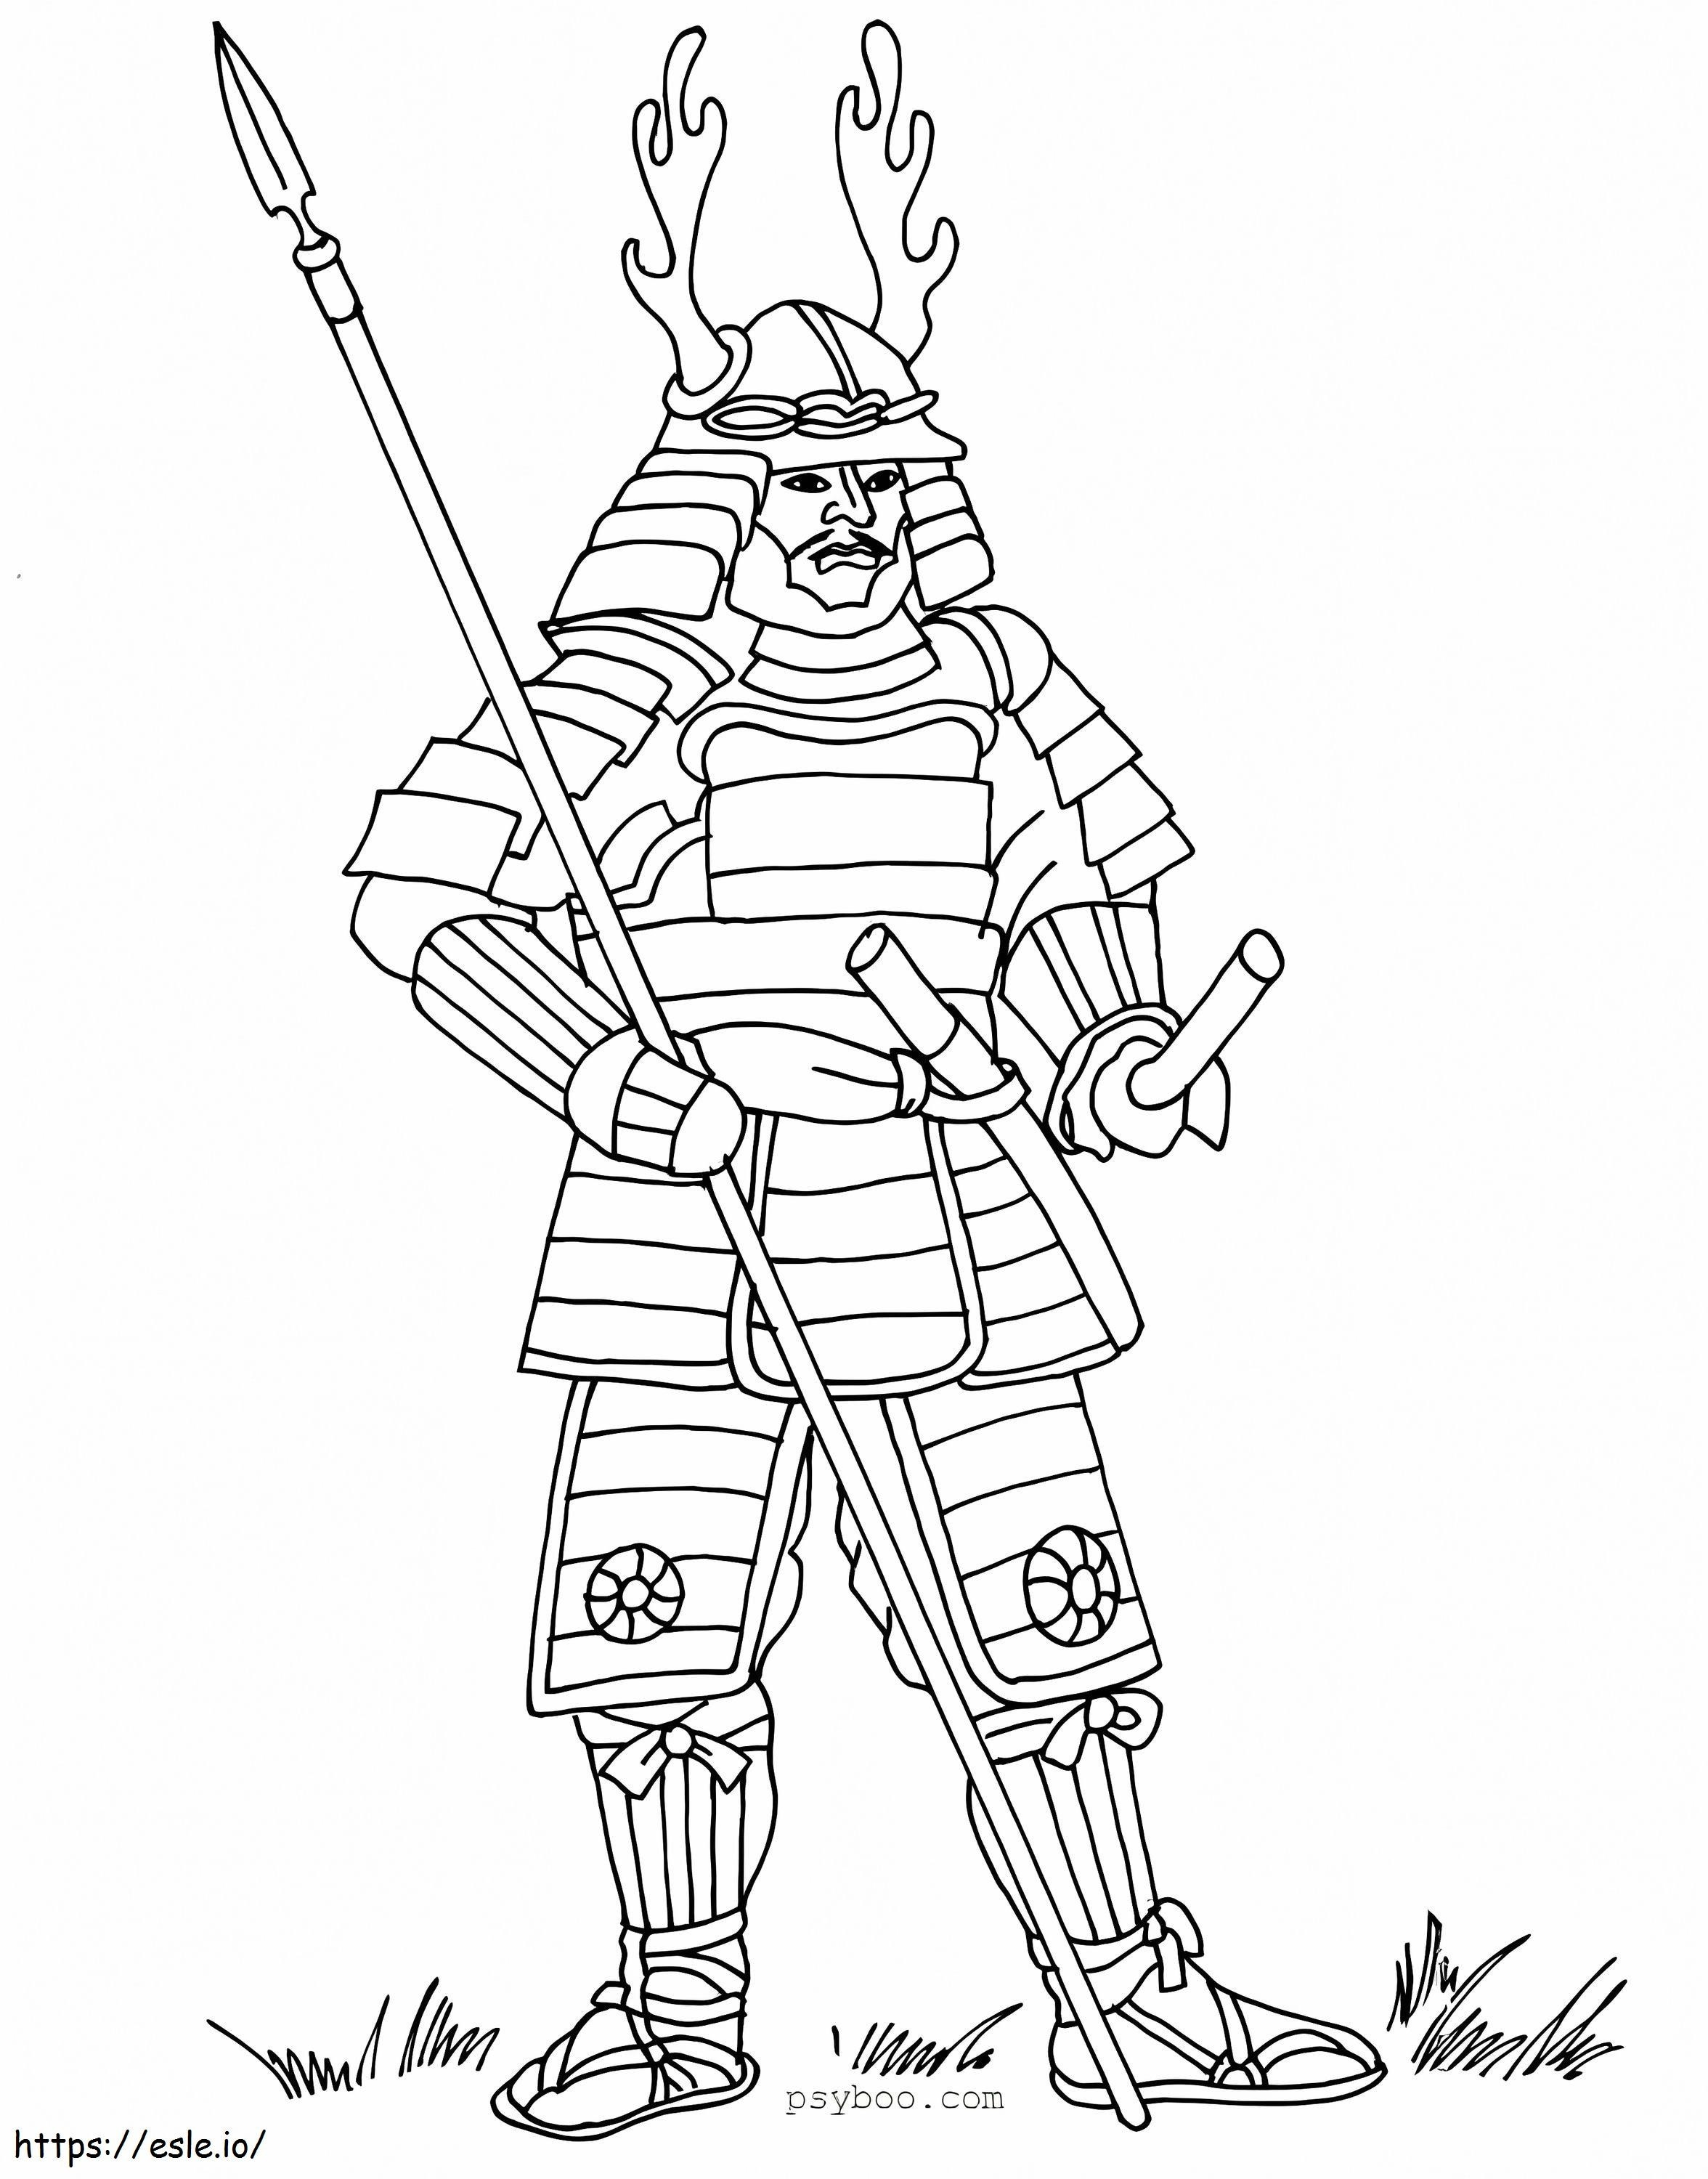 Basic Samurai coloring page